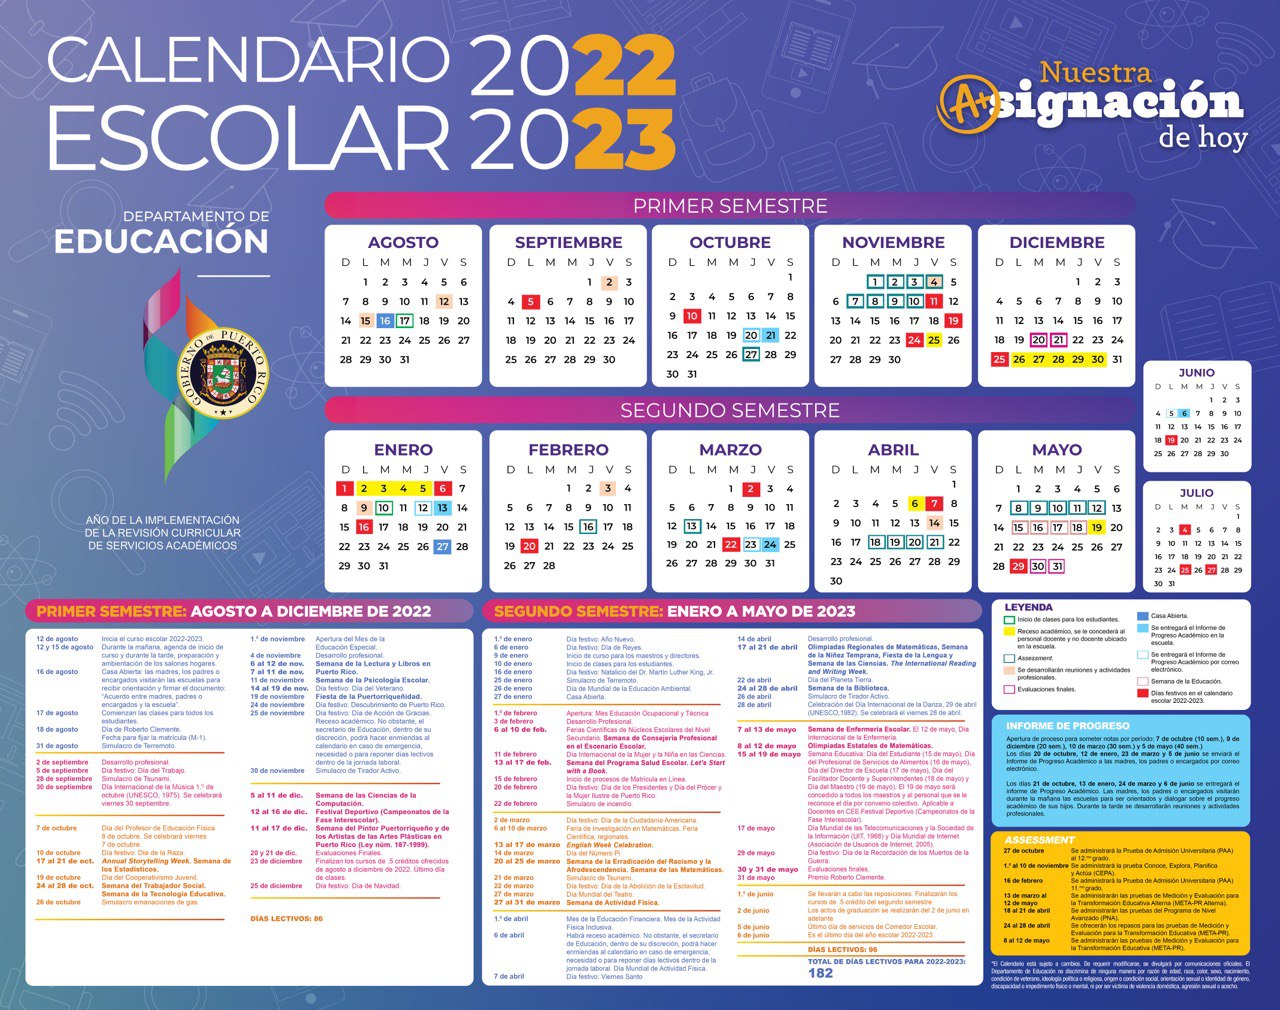 Calendario Escolar 2023 Puerto Rico Get Calendar 2023 Update Images